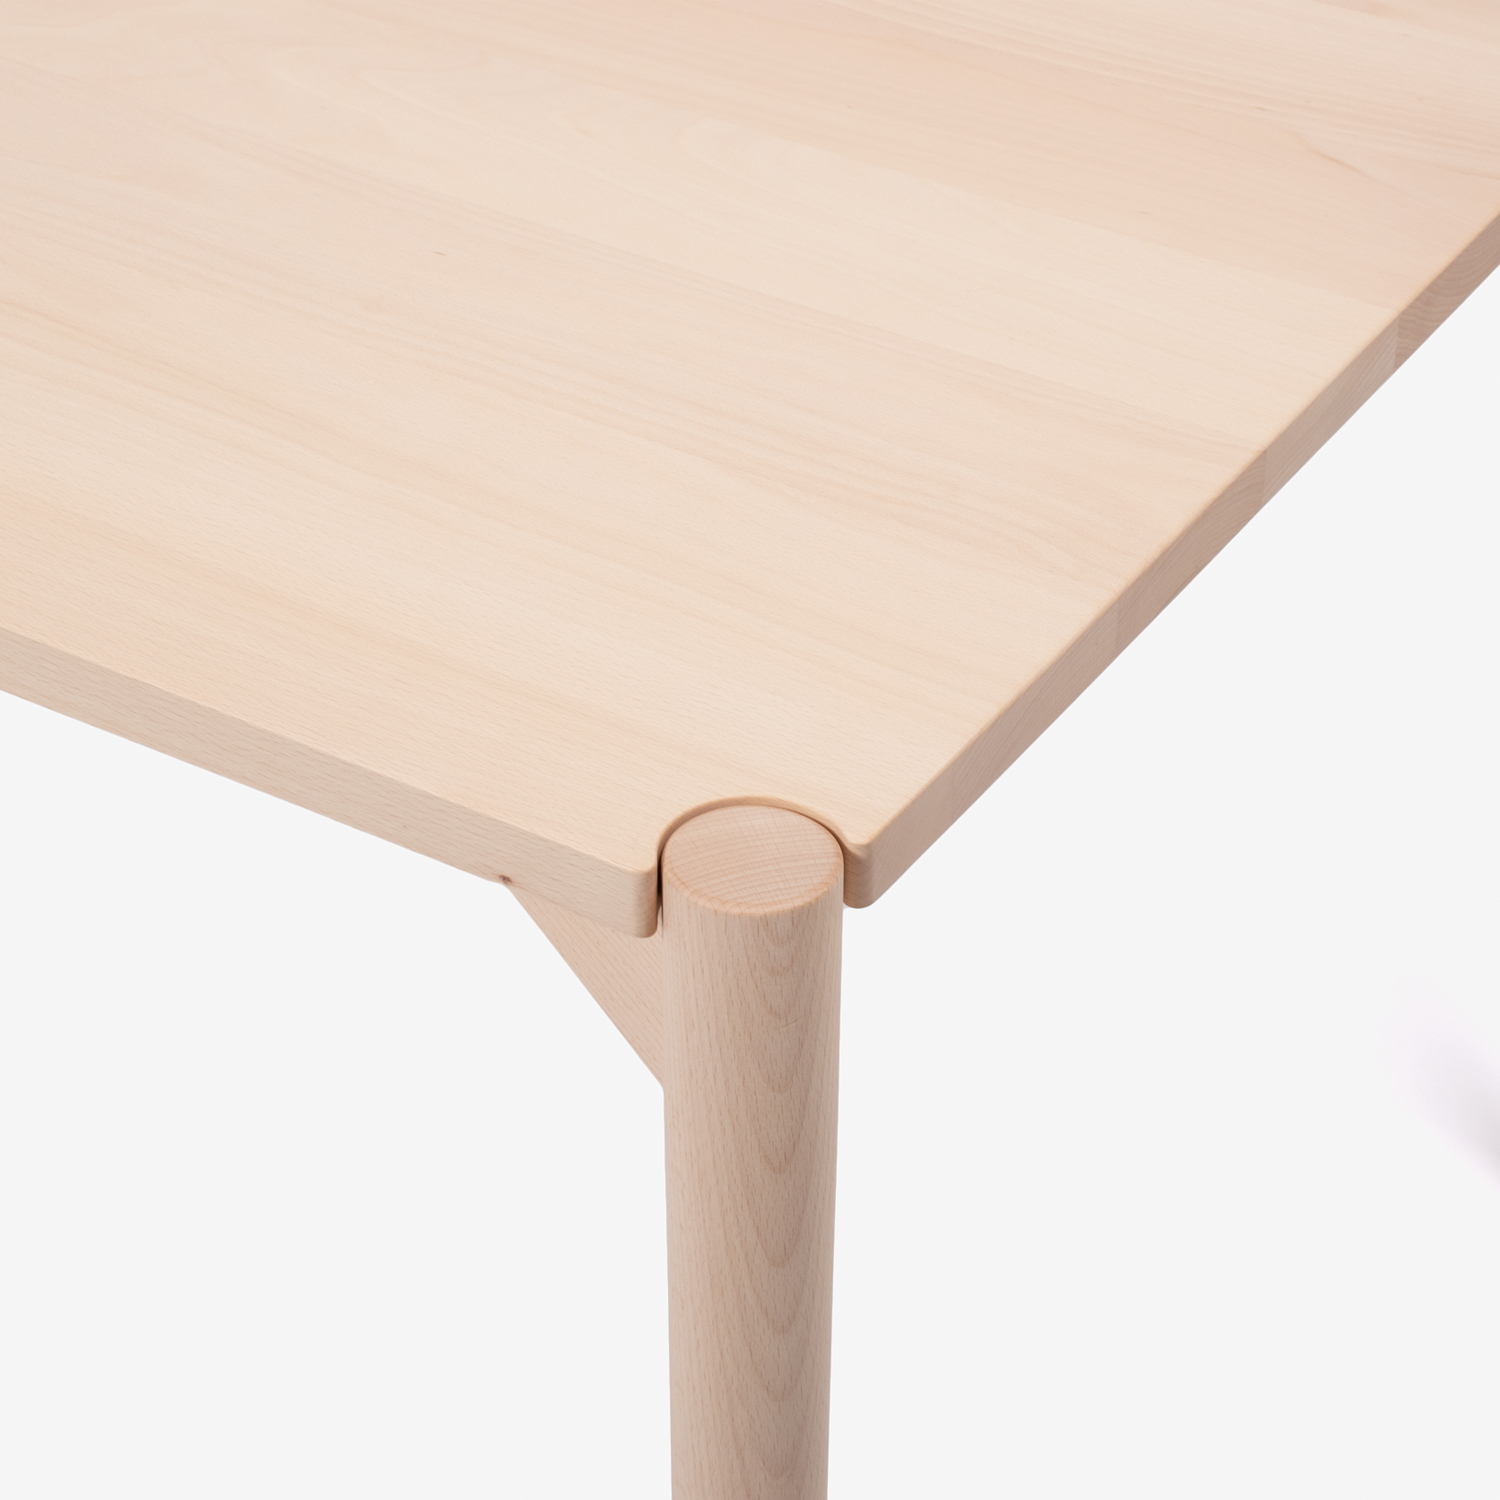 秋田木工　ダイニングテーブル「リュッケ」ブナ材 白木塗装 全2サイズ【決算セールのため20%OFF】